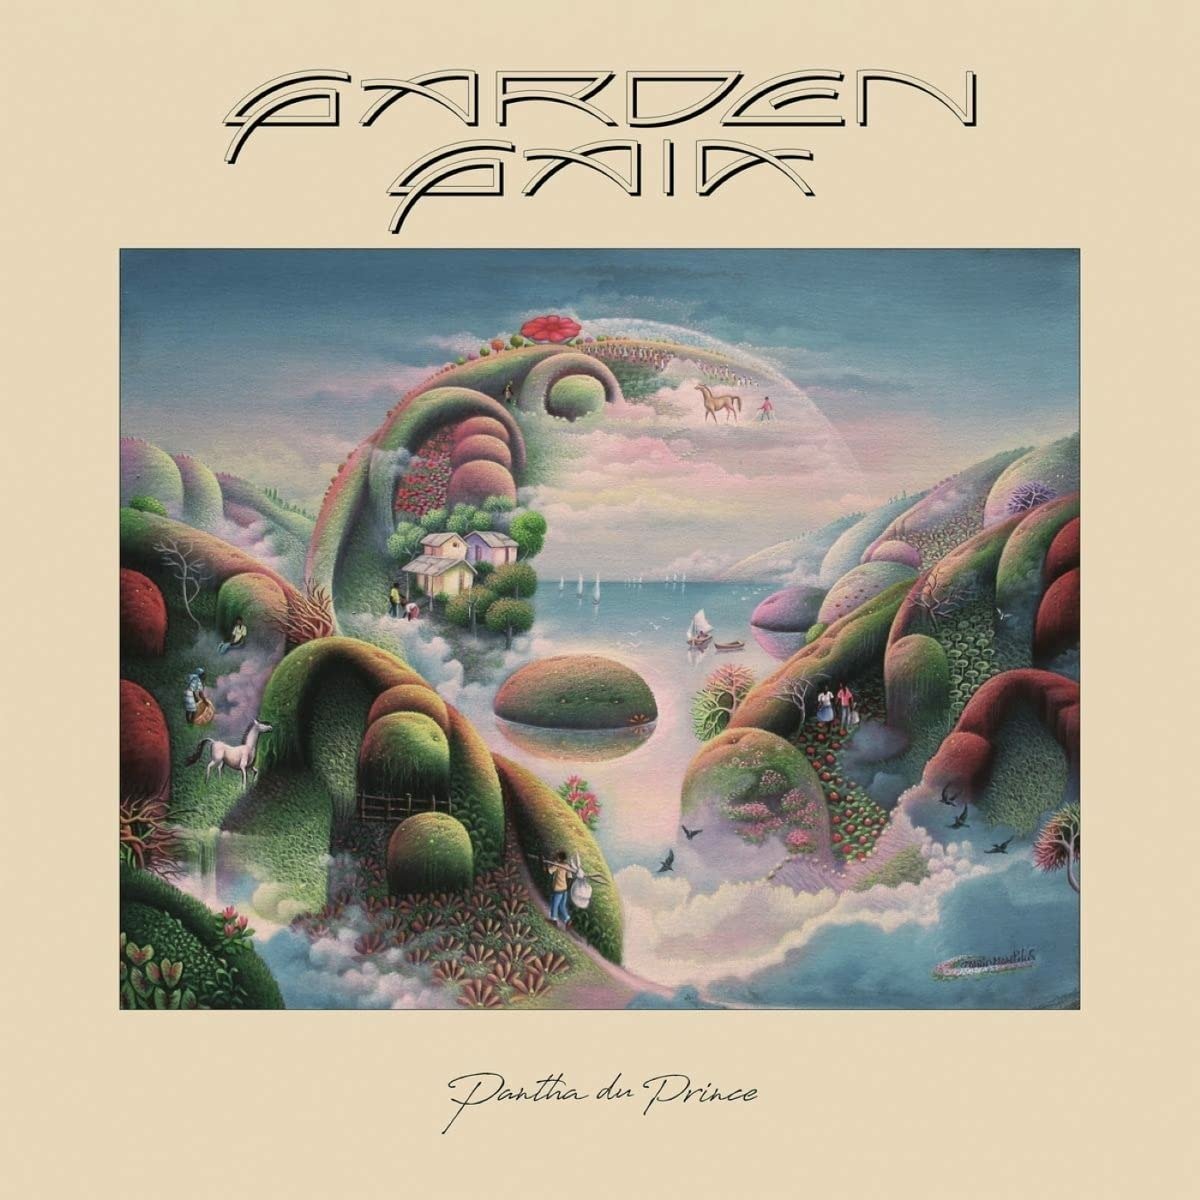 PANTHA DU PRINCE - GARDEN GAIA, CD